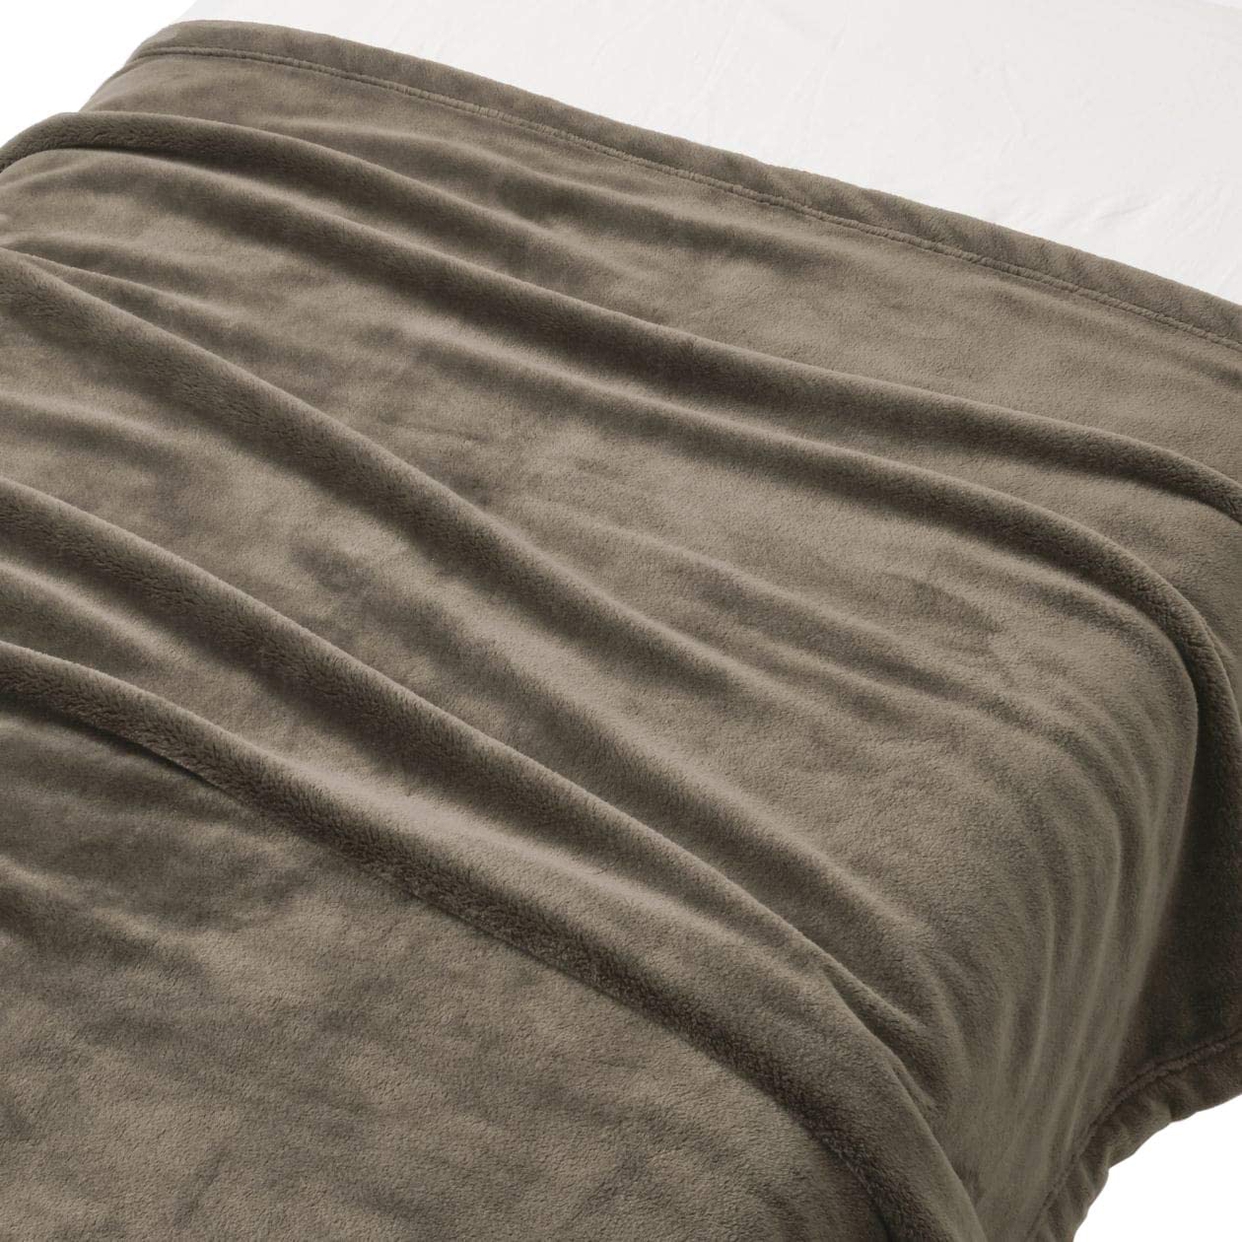 無印良品(MUJI) あたたかファイバームレにくい厚手毛布 Sの商品画像1 